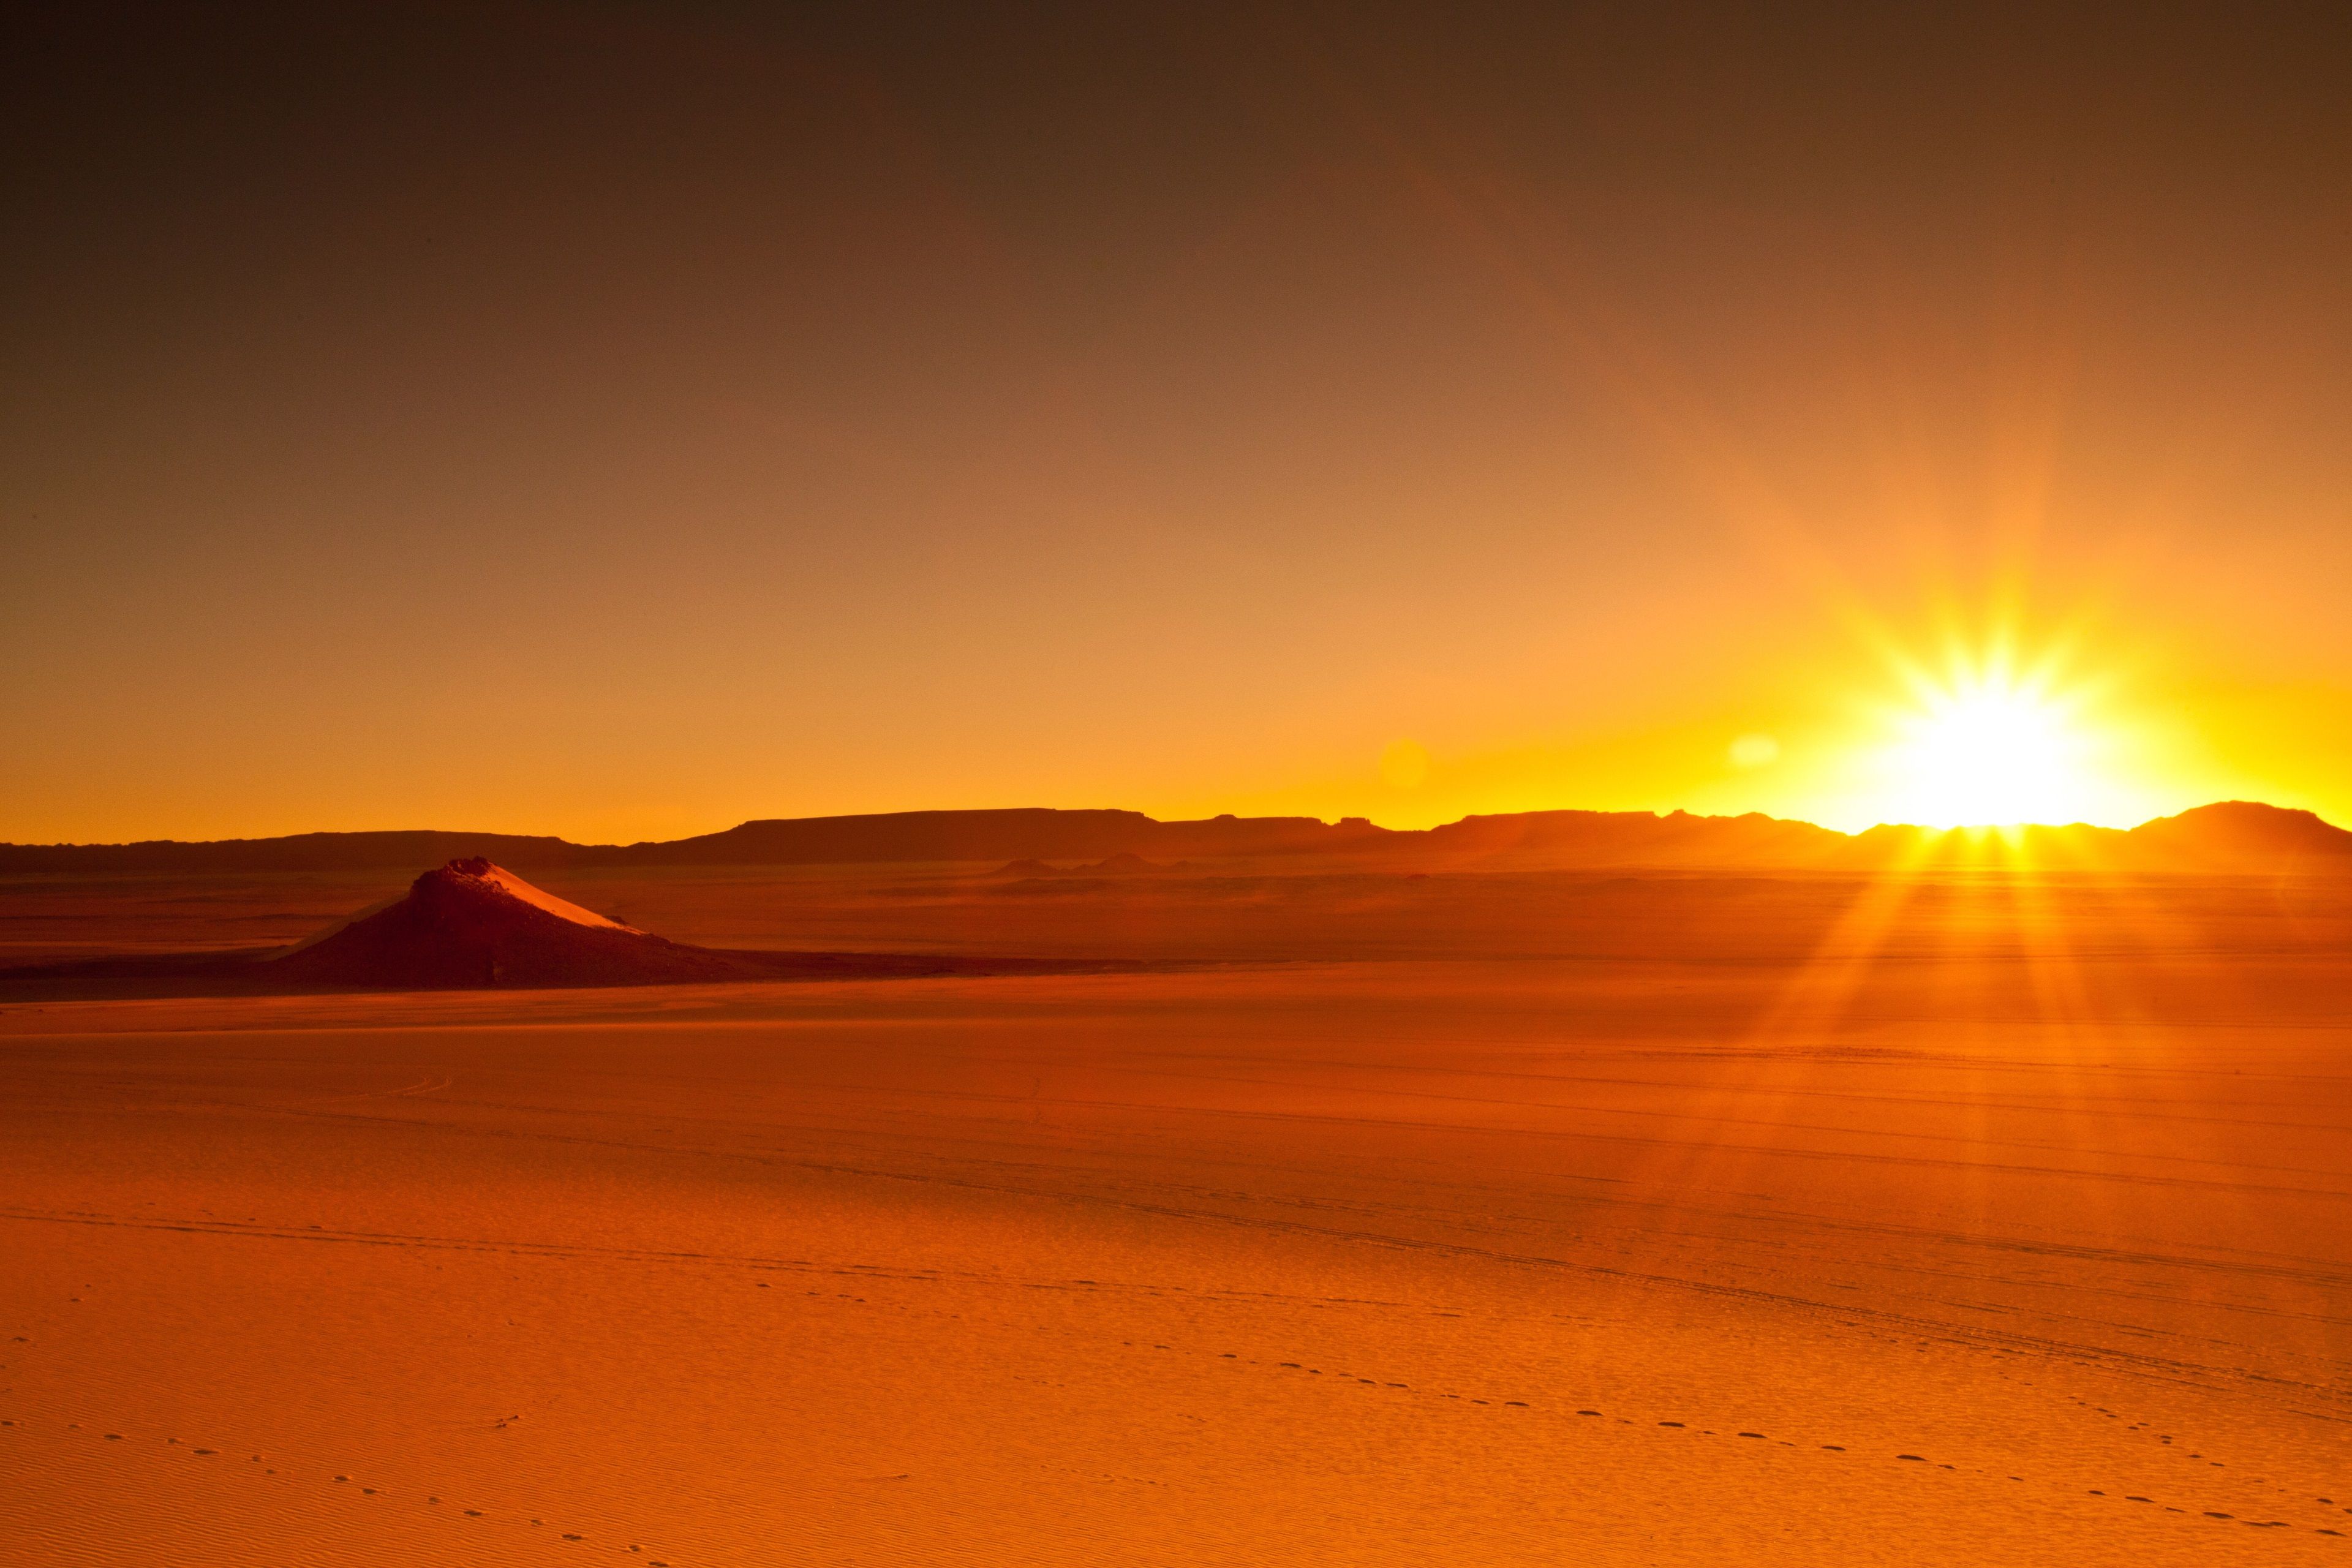 desert 4k free wallpaper for desktop. Desert background, Desert sunset, Sunset